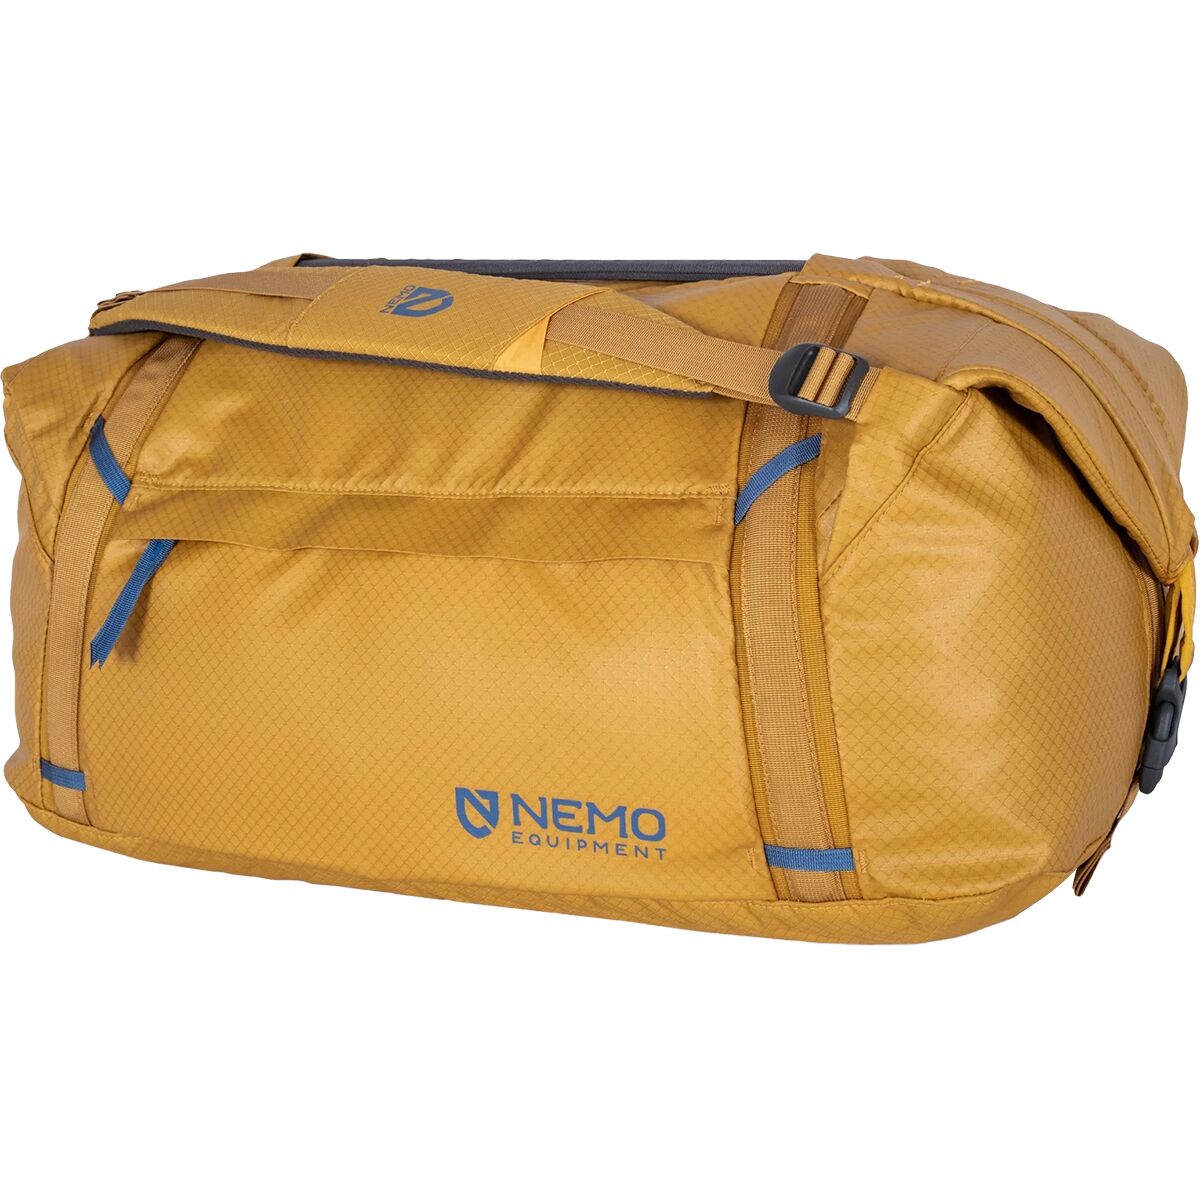 Двойная трансформируемая спортивная сумка объемом 55 л Nemo Equipment Inc., цвет chai